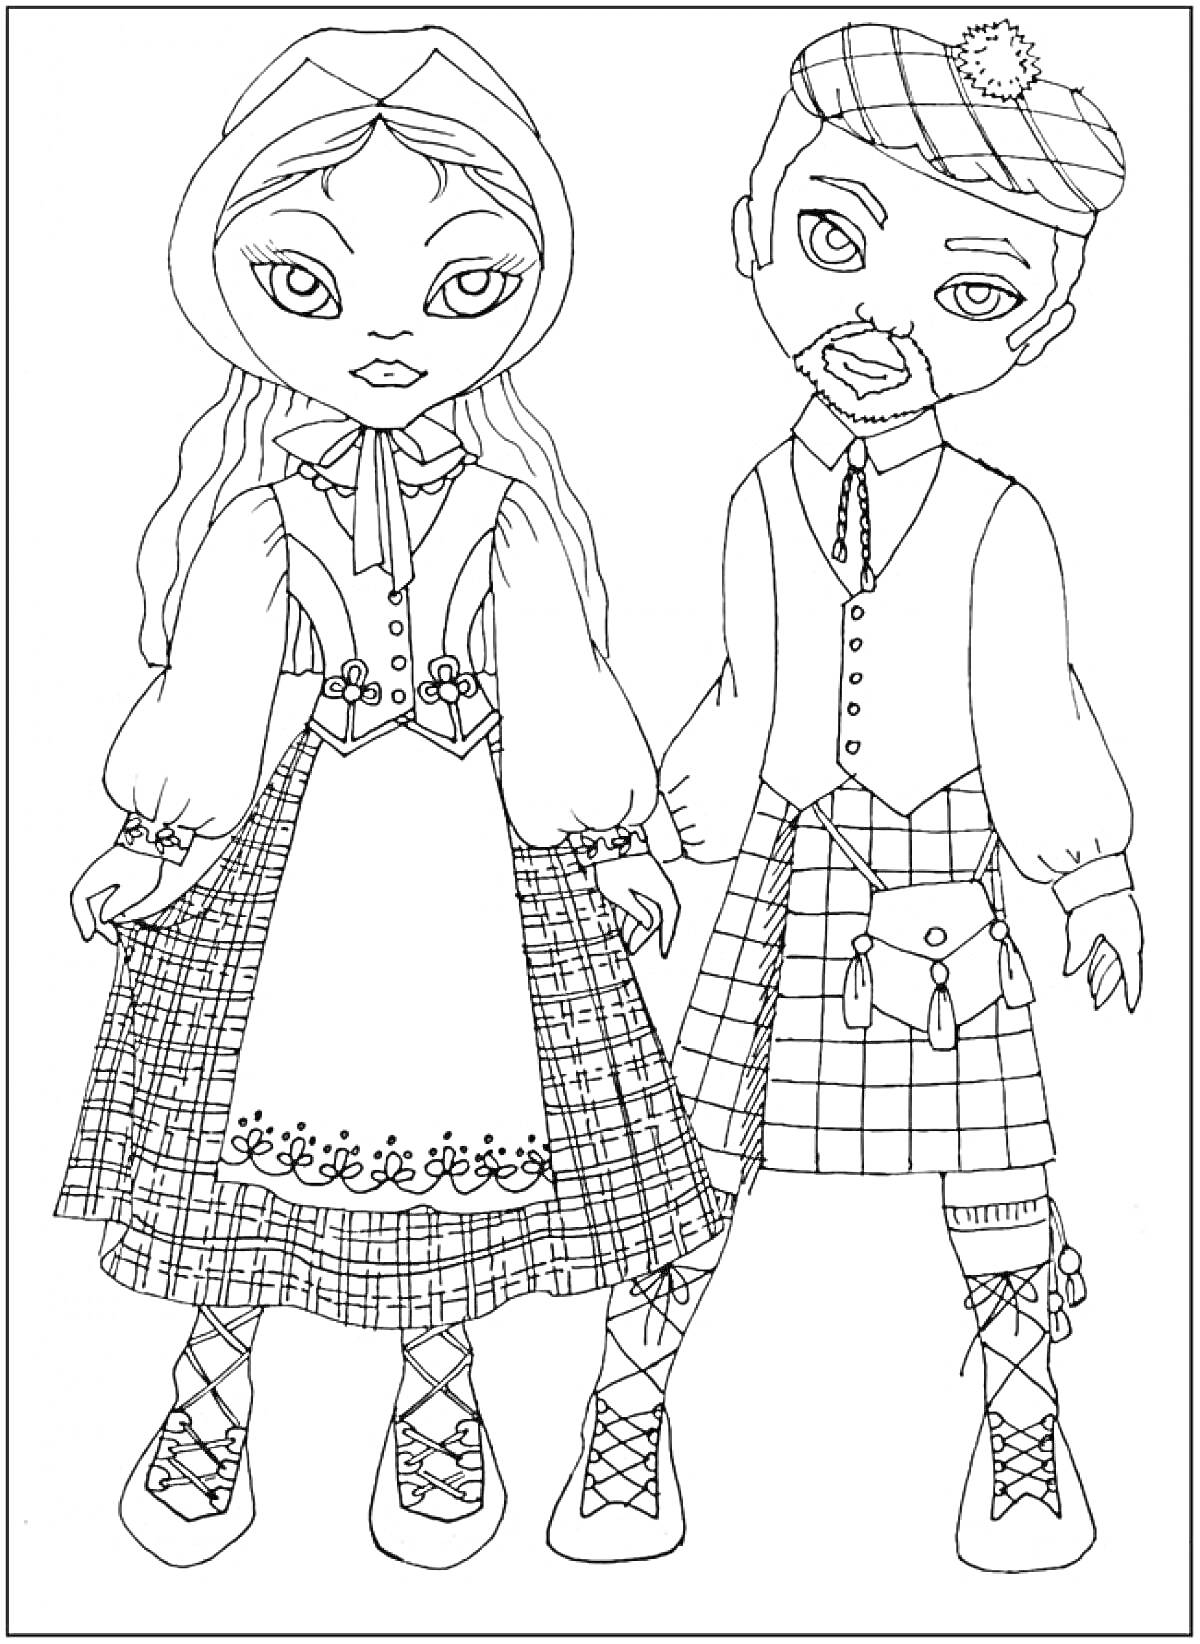 Раскраска Дети в шотландских традиционных костюмах с клетчатыми юбками и беретами